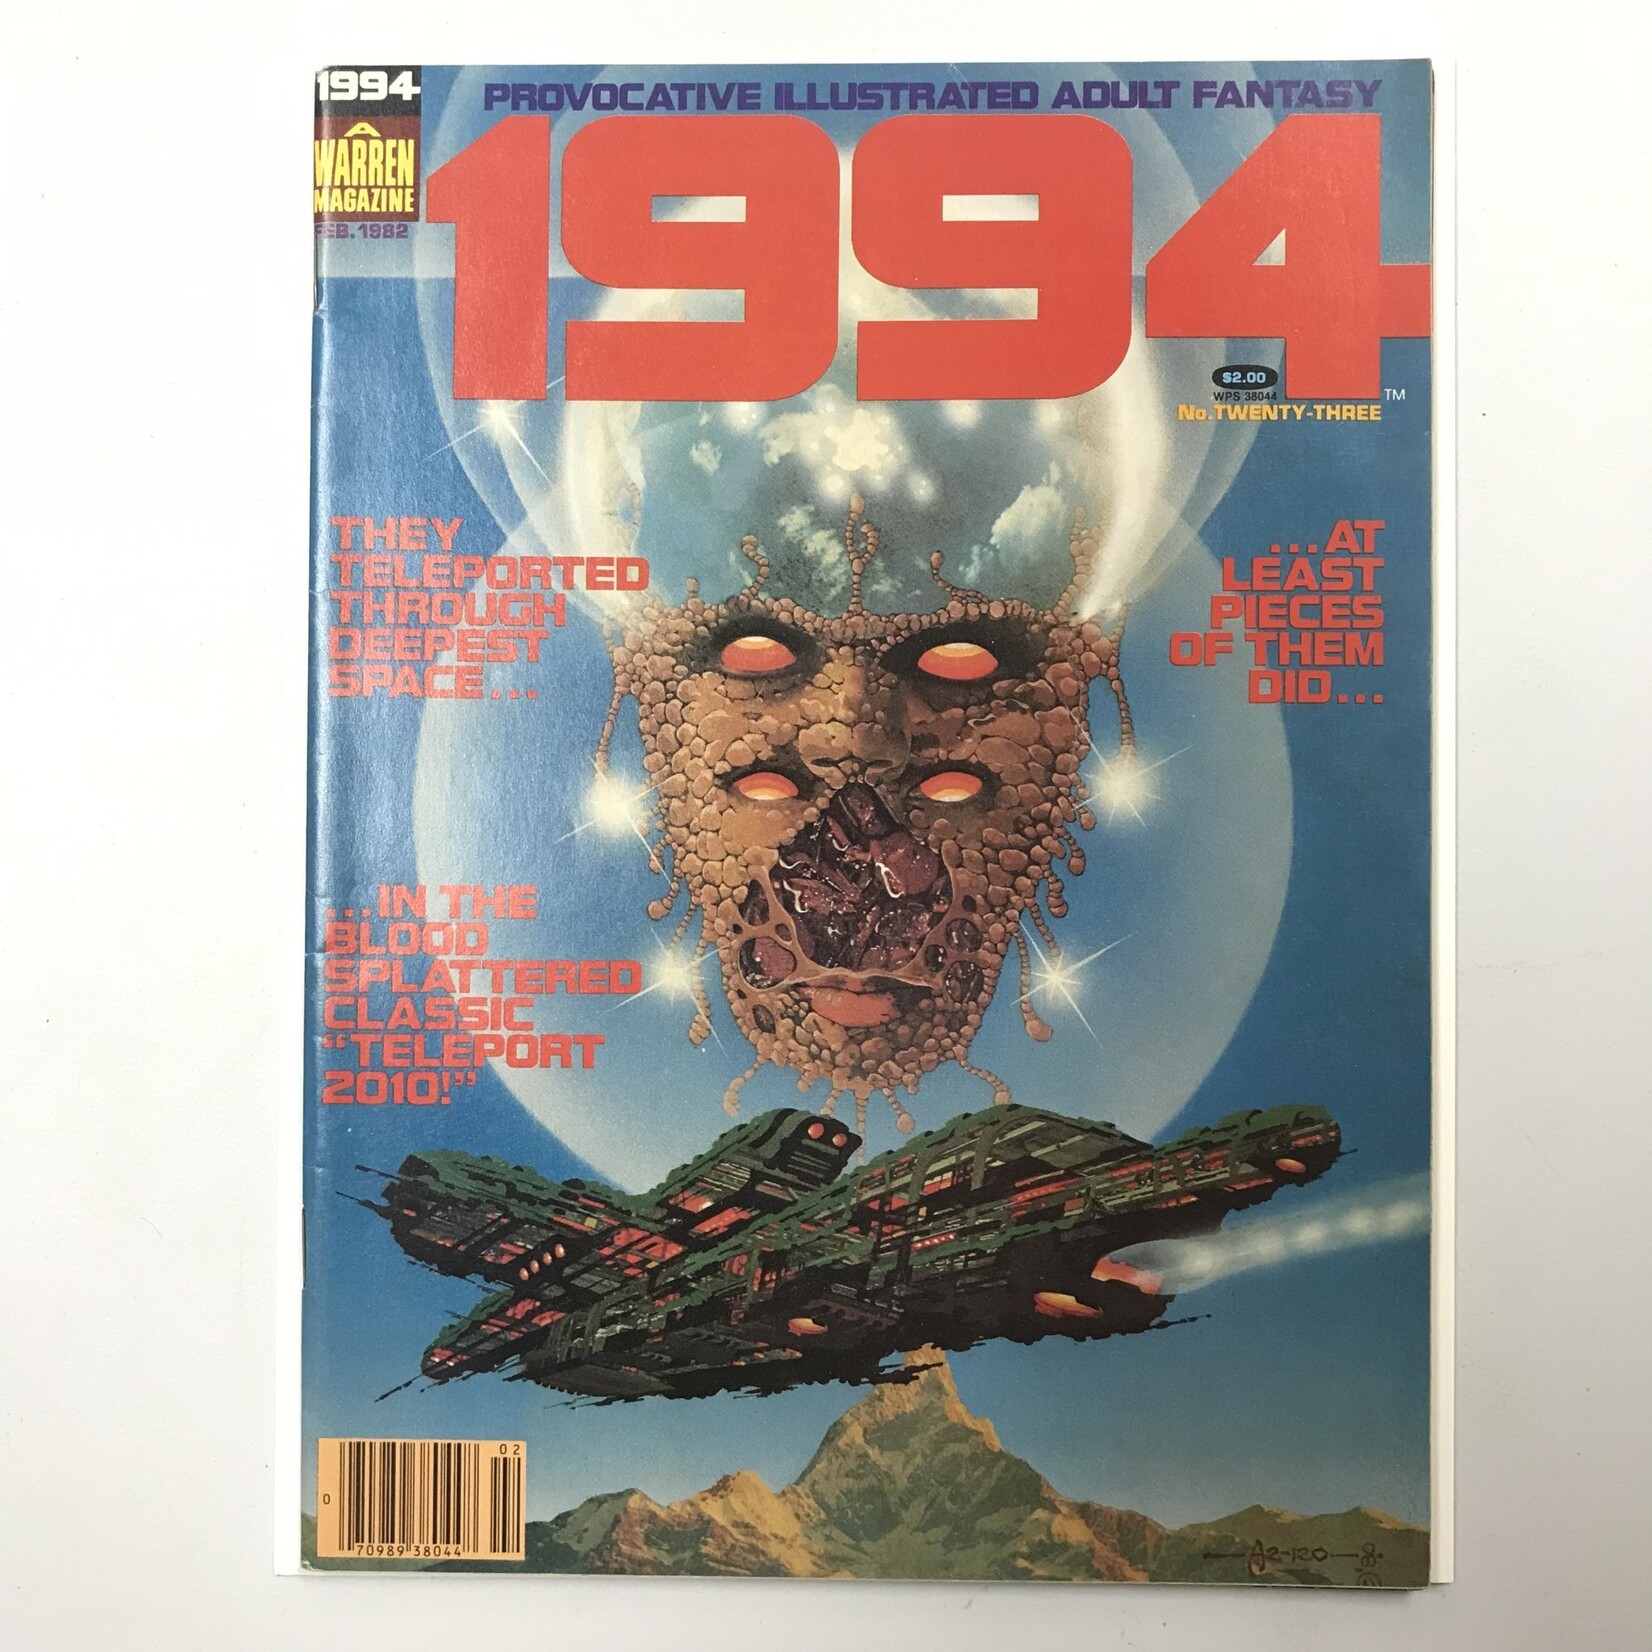 1994 - #23 February 1982 - Magazine (18+)